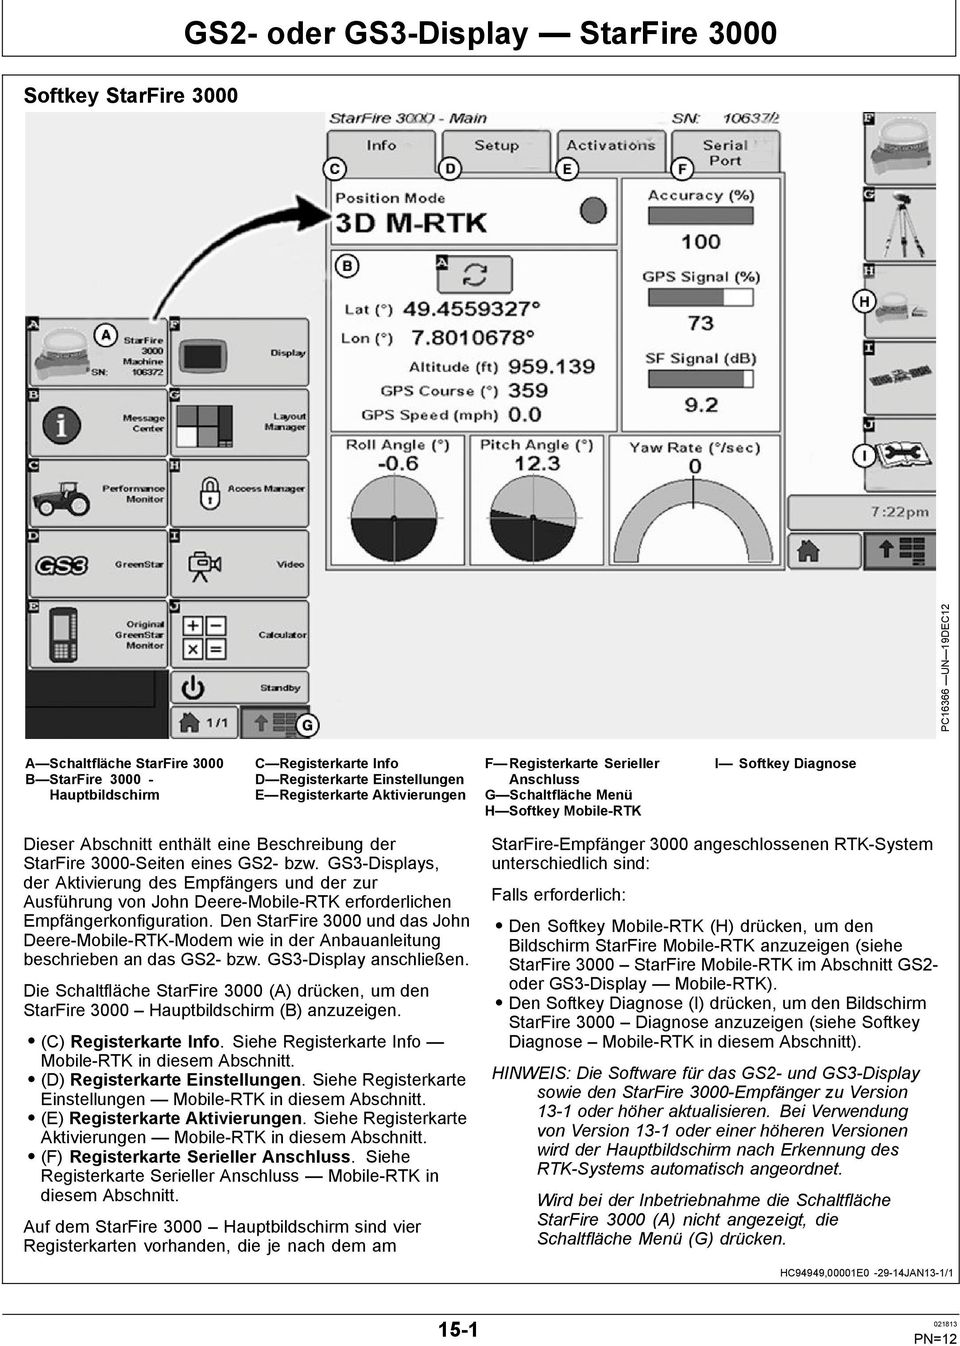 GS2- bzw. GS3-Displays, der Aktivierung des Empfängers und der zur Ausführung von John Deere-Mobile-RTK erforderlichen Empfängerkonfiguration.